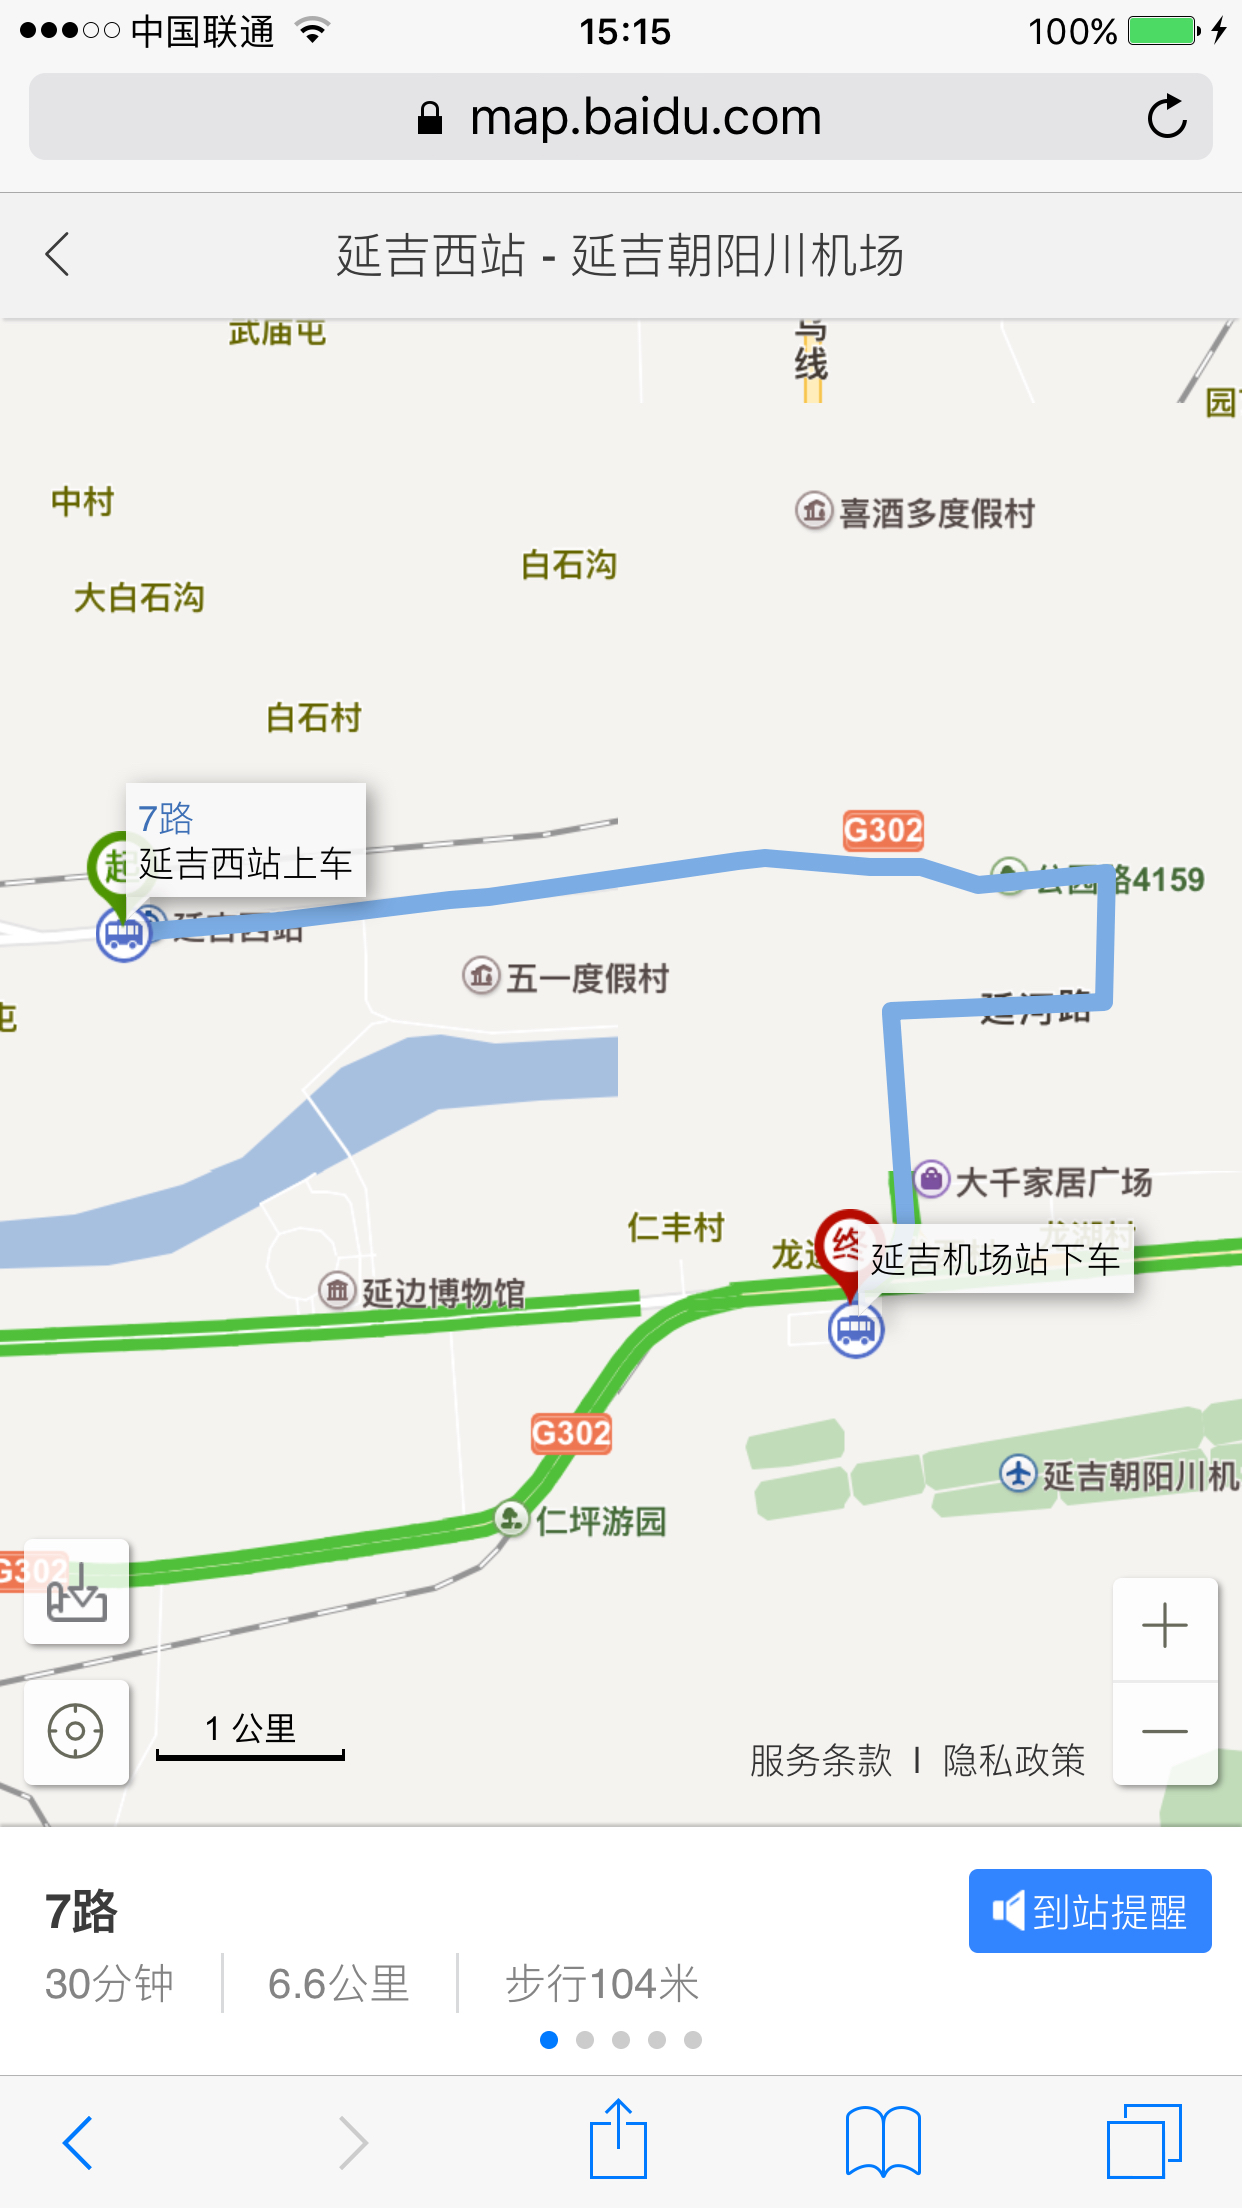 哈尔滨高铁到延吉,再坐飞机去长白山,请问怎么从延吉西到延吉机场?